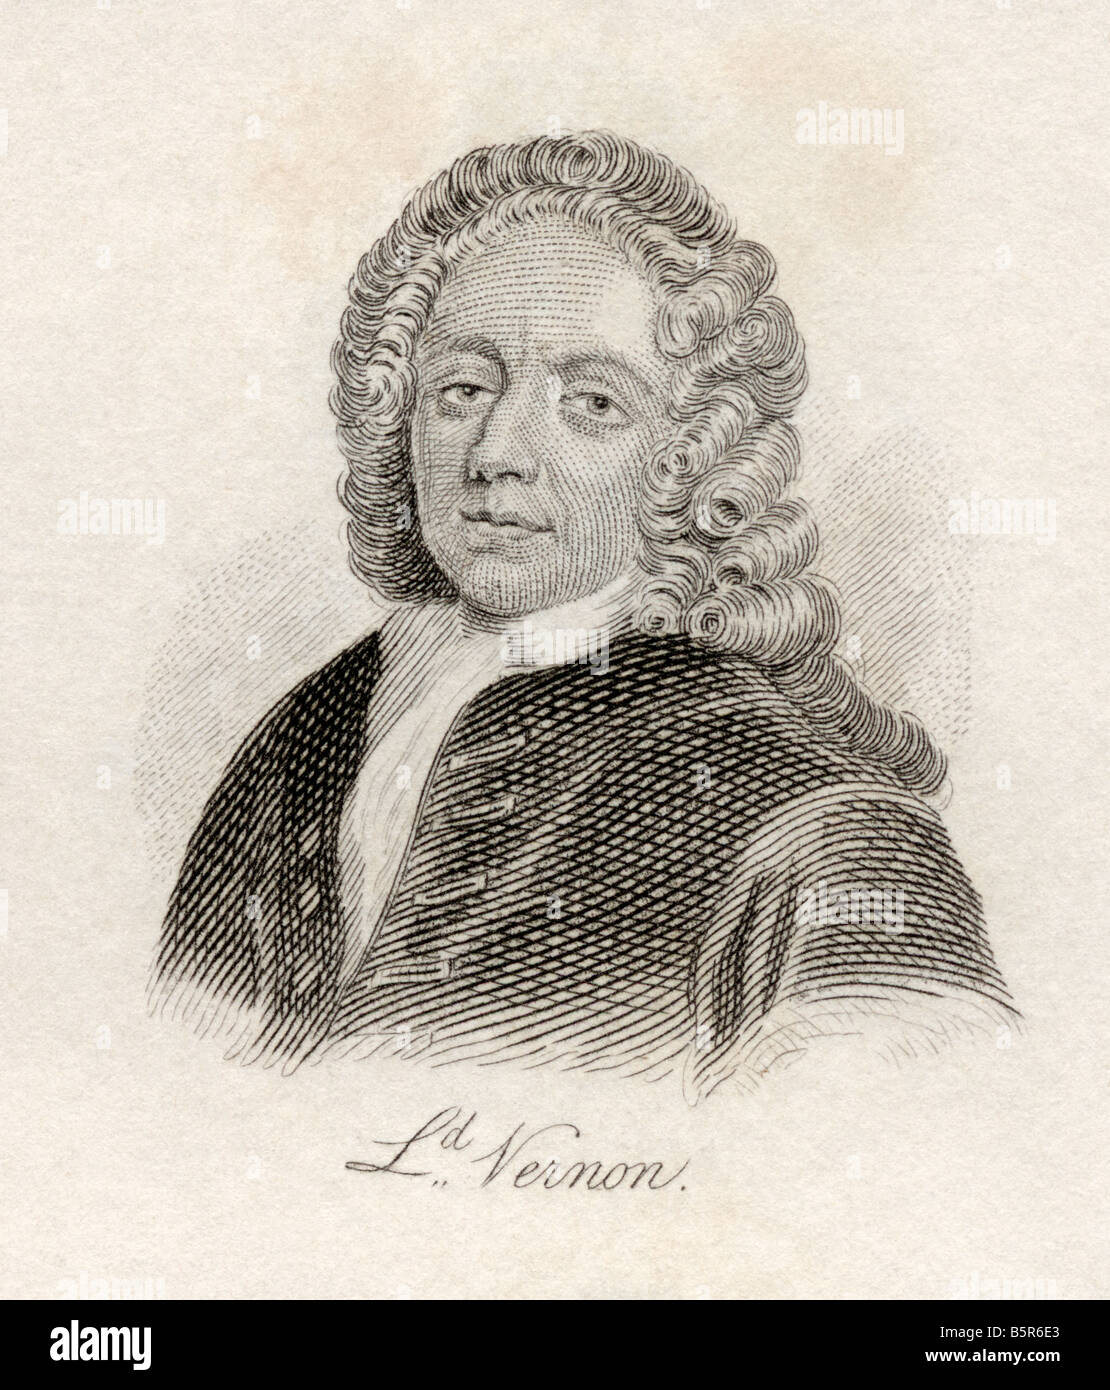 Edward Vernon, 1684 - 1757. Officier de marine anglais. Extrait du livre Crabb's Historical Dictionary, publié en 1825. Banque D'Images